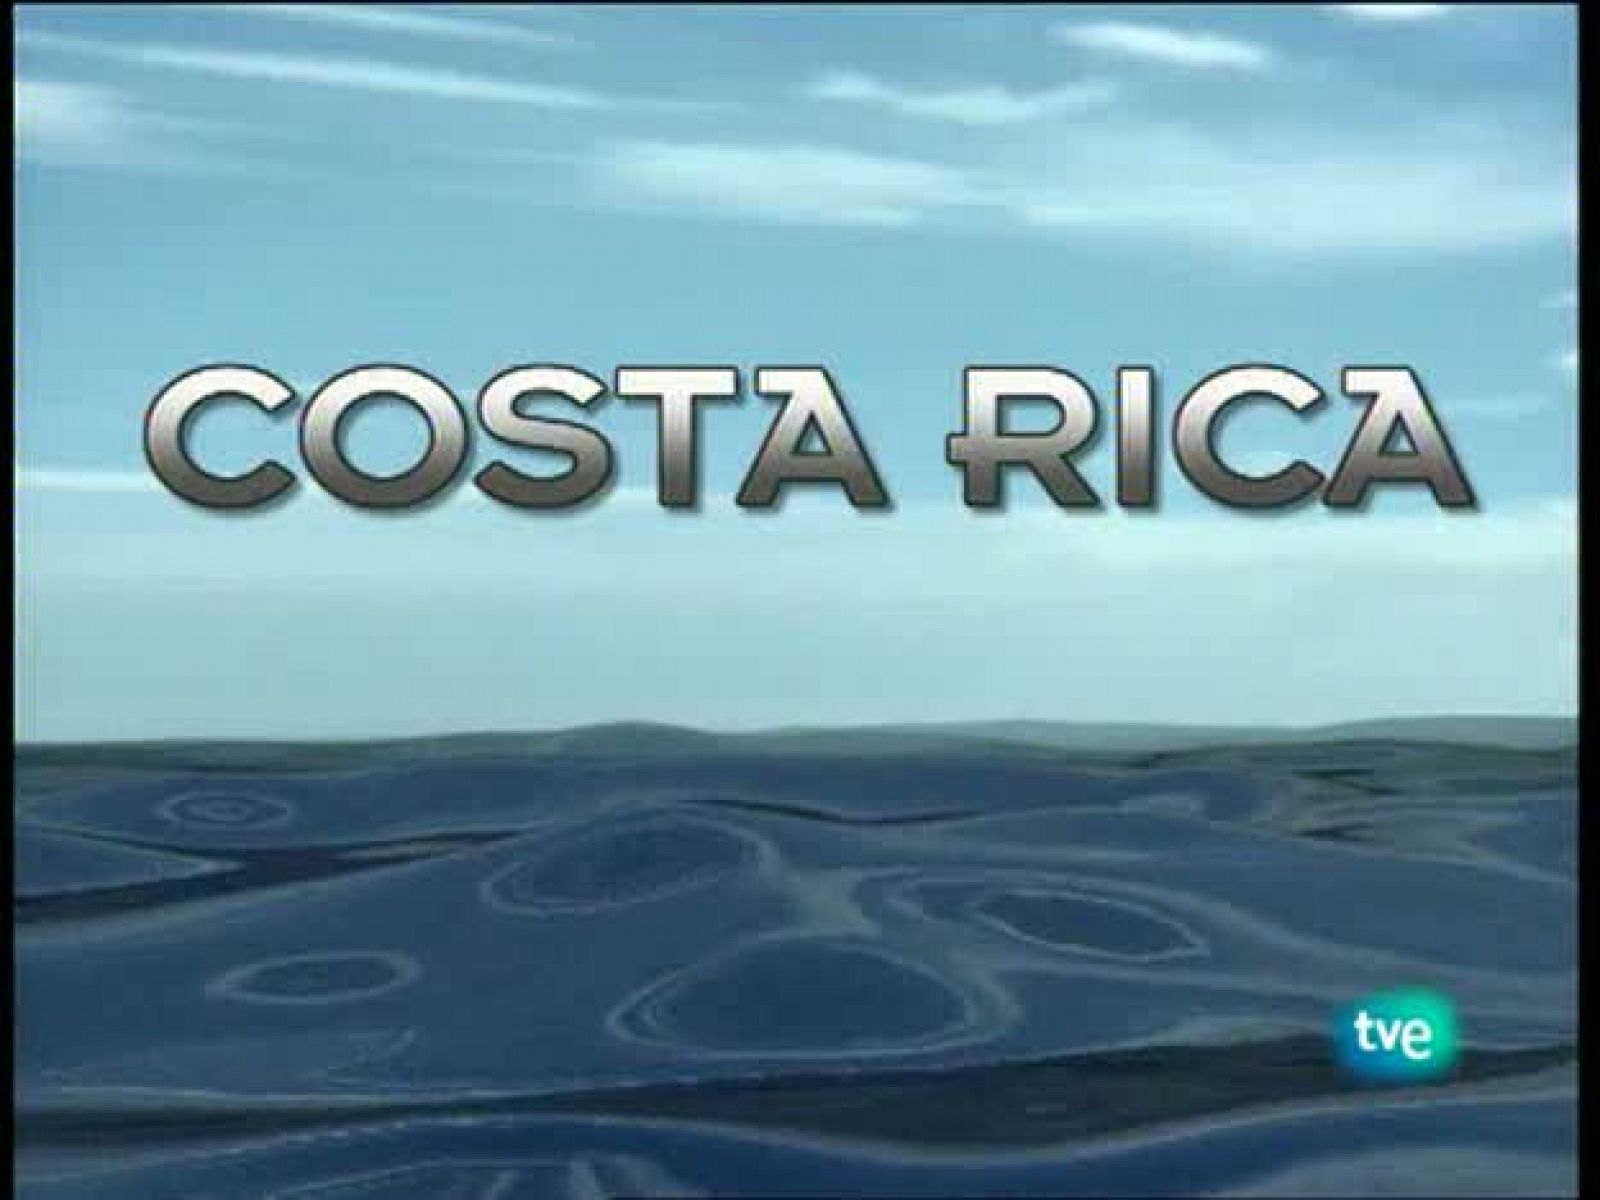 La huella - Costa Rica